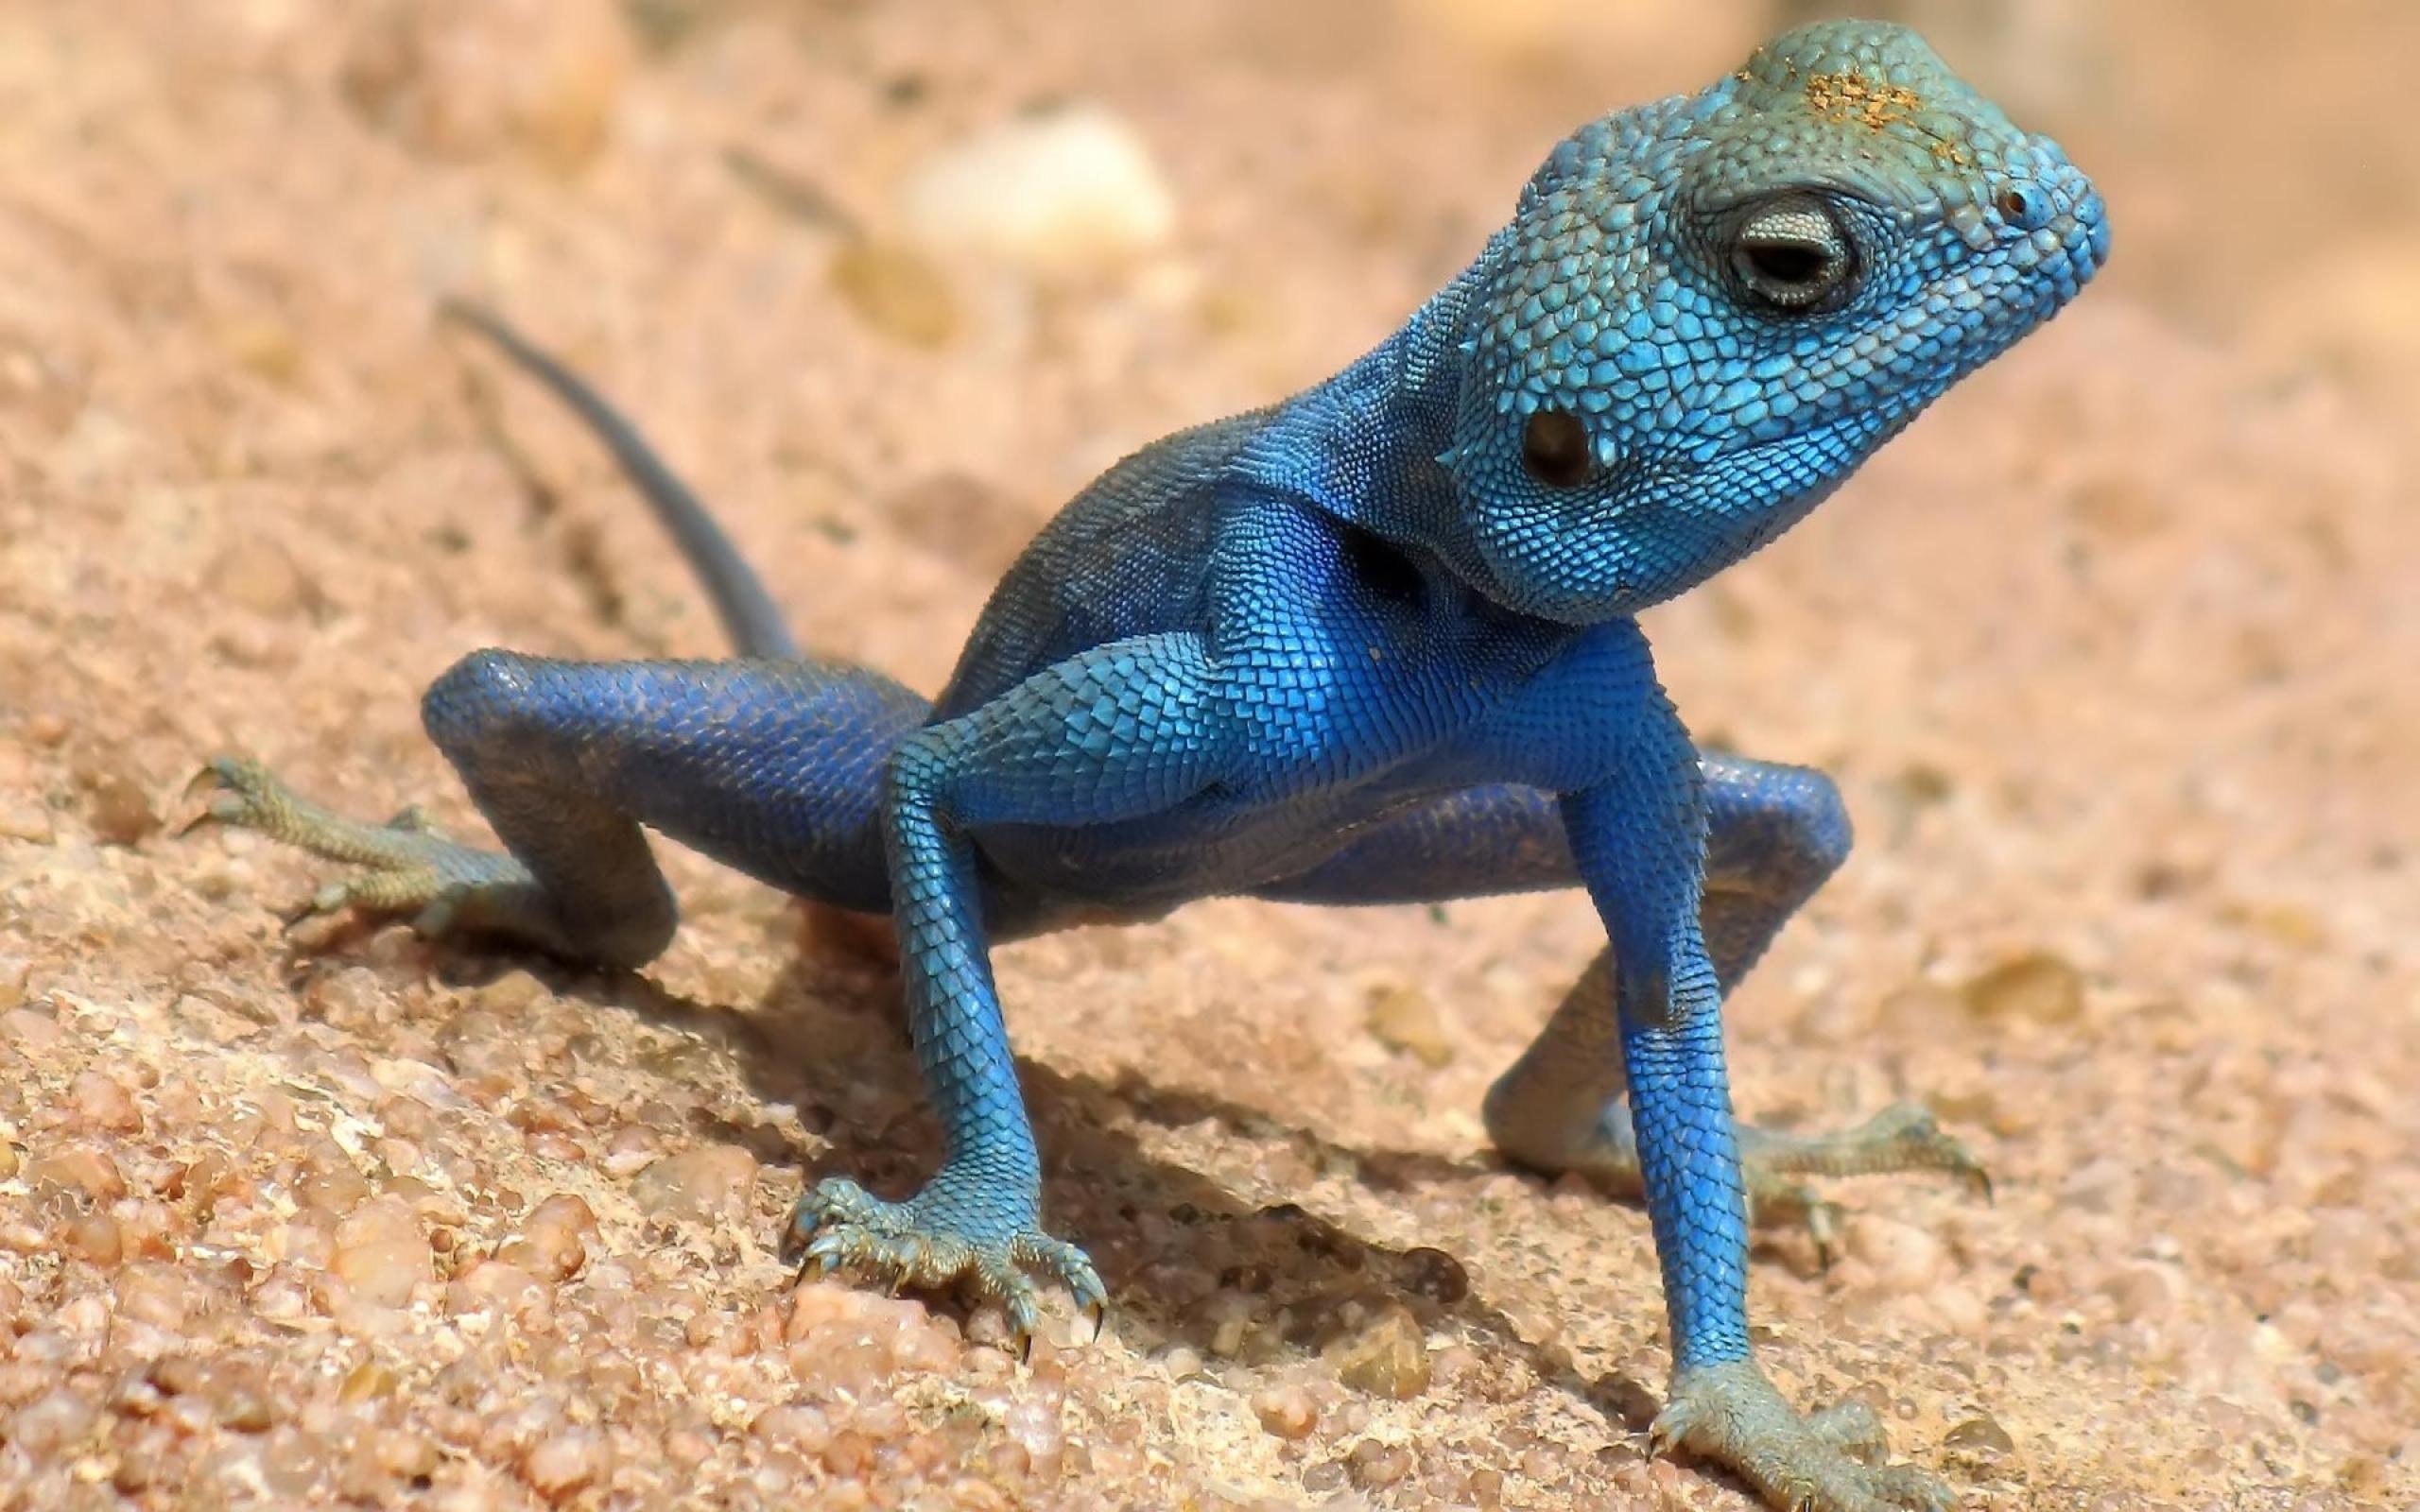 Blue lizard popular backgrounds, 2560x1600 HD Desktop